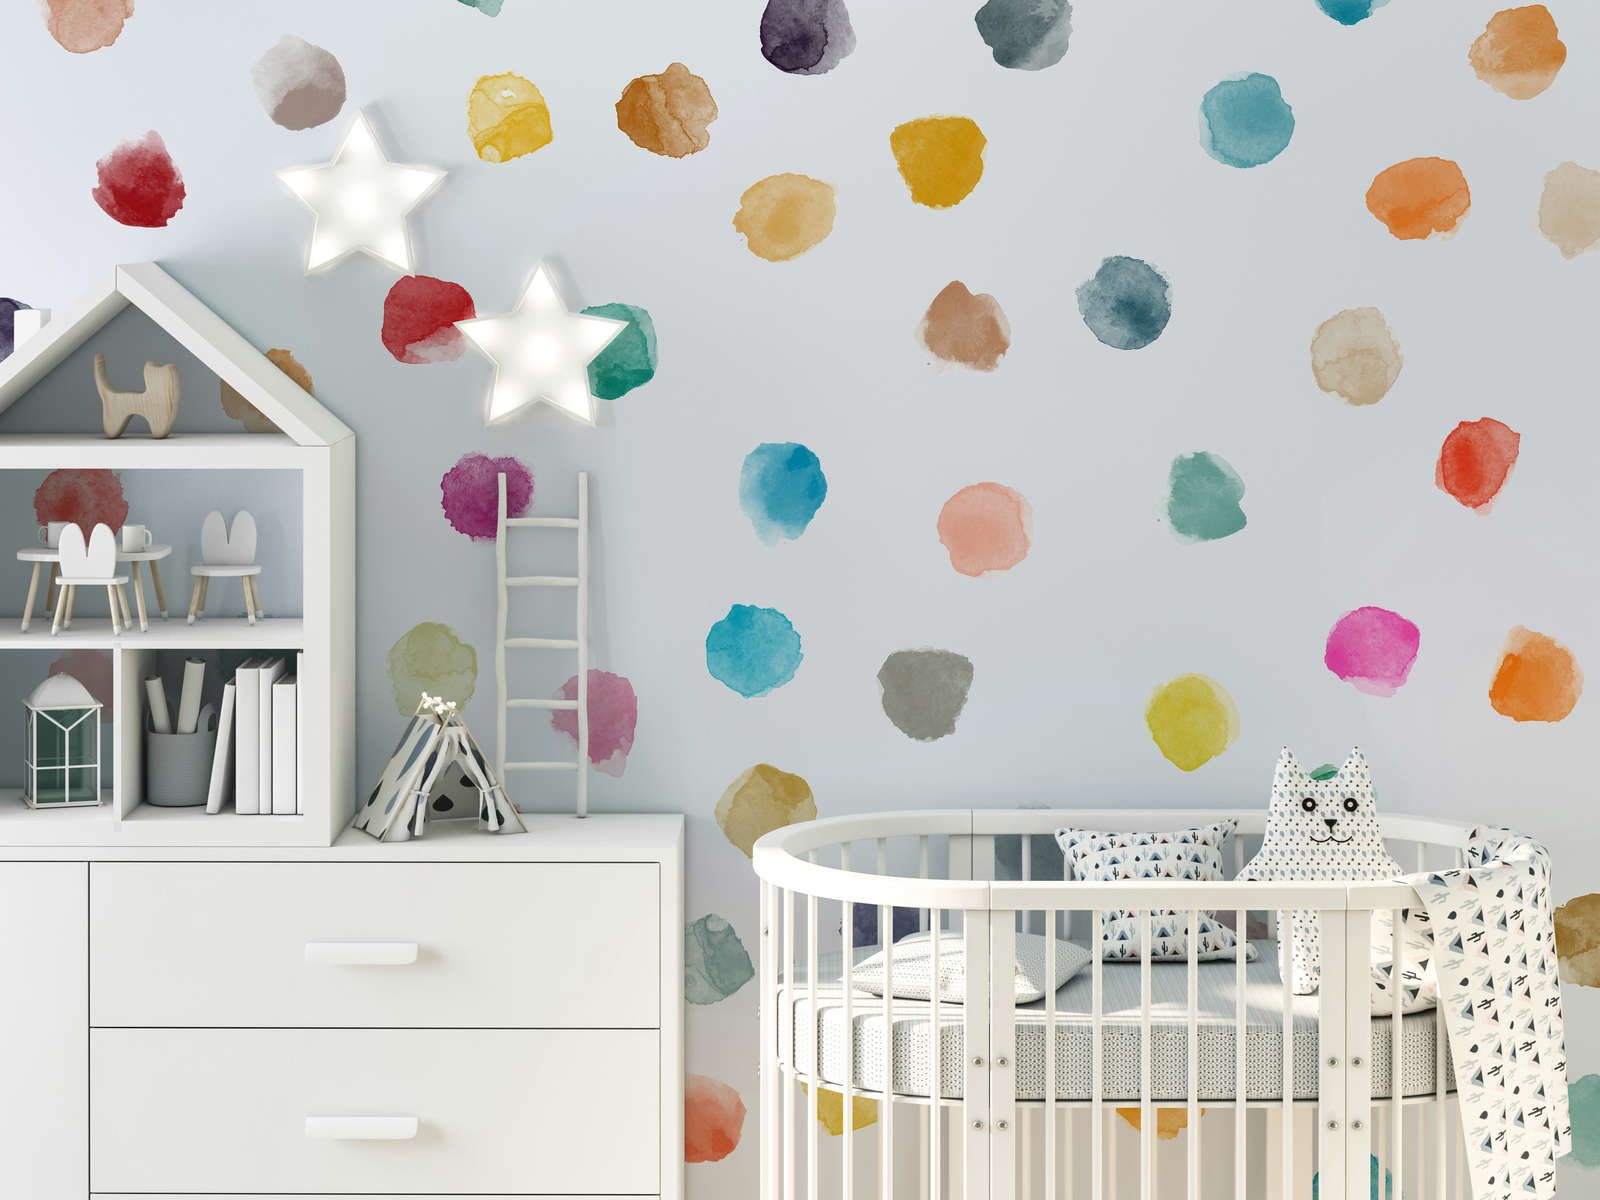             papiers peints à impression numérique pour chambre d'enfant à pois colorés - intissé lisse & légèrement brillant
        